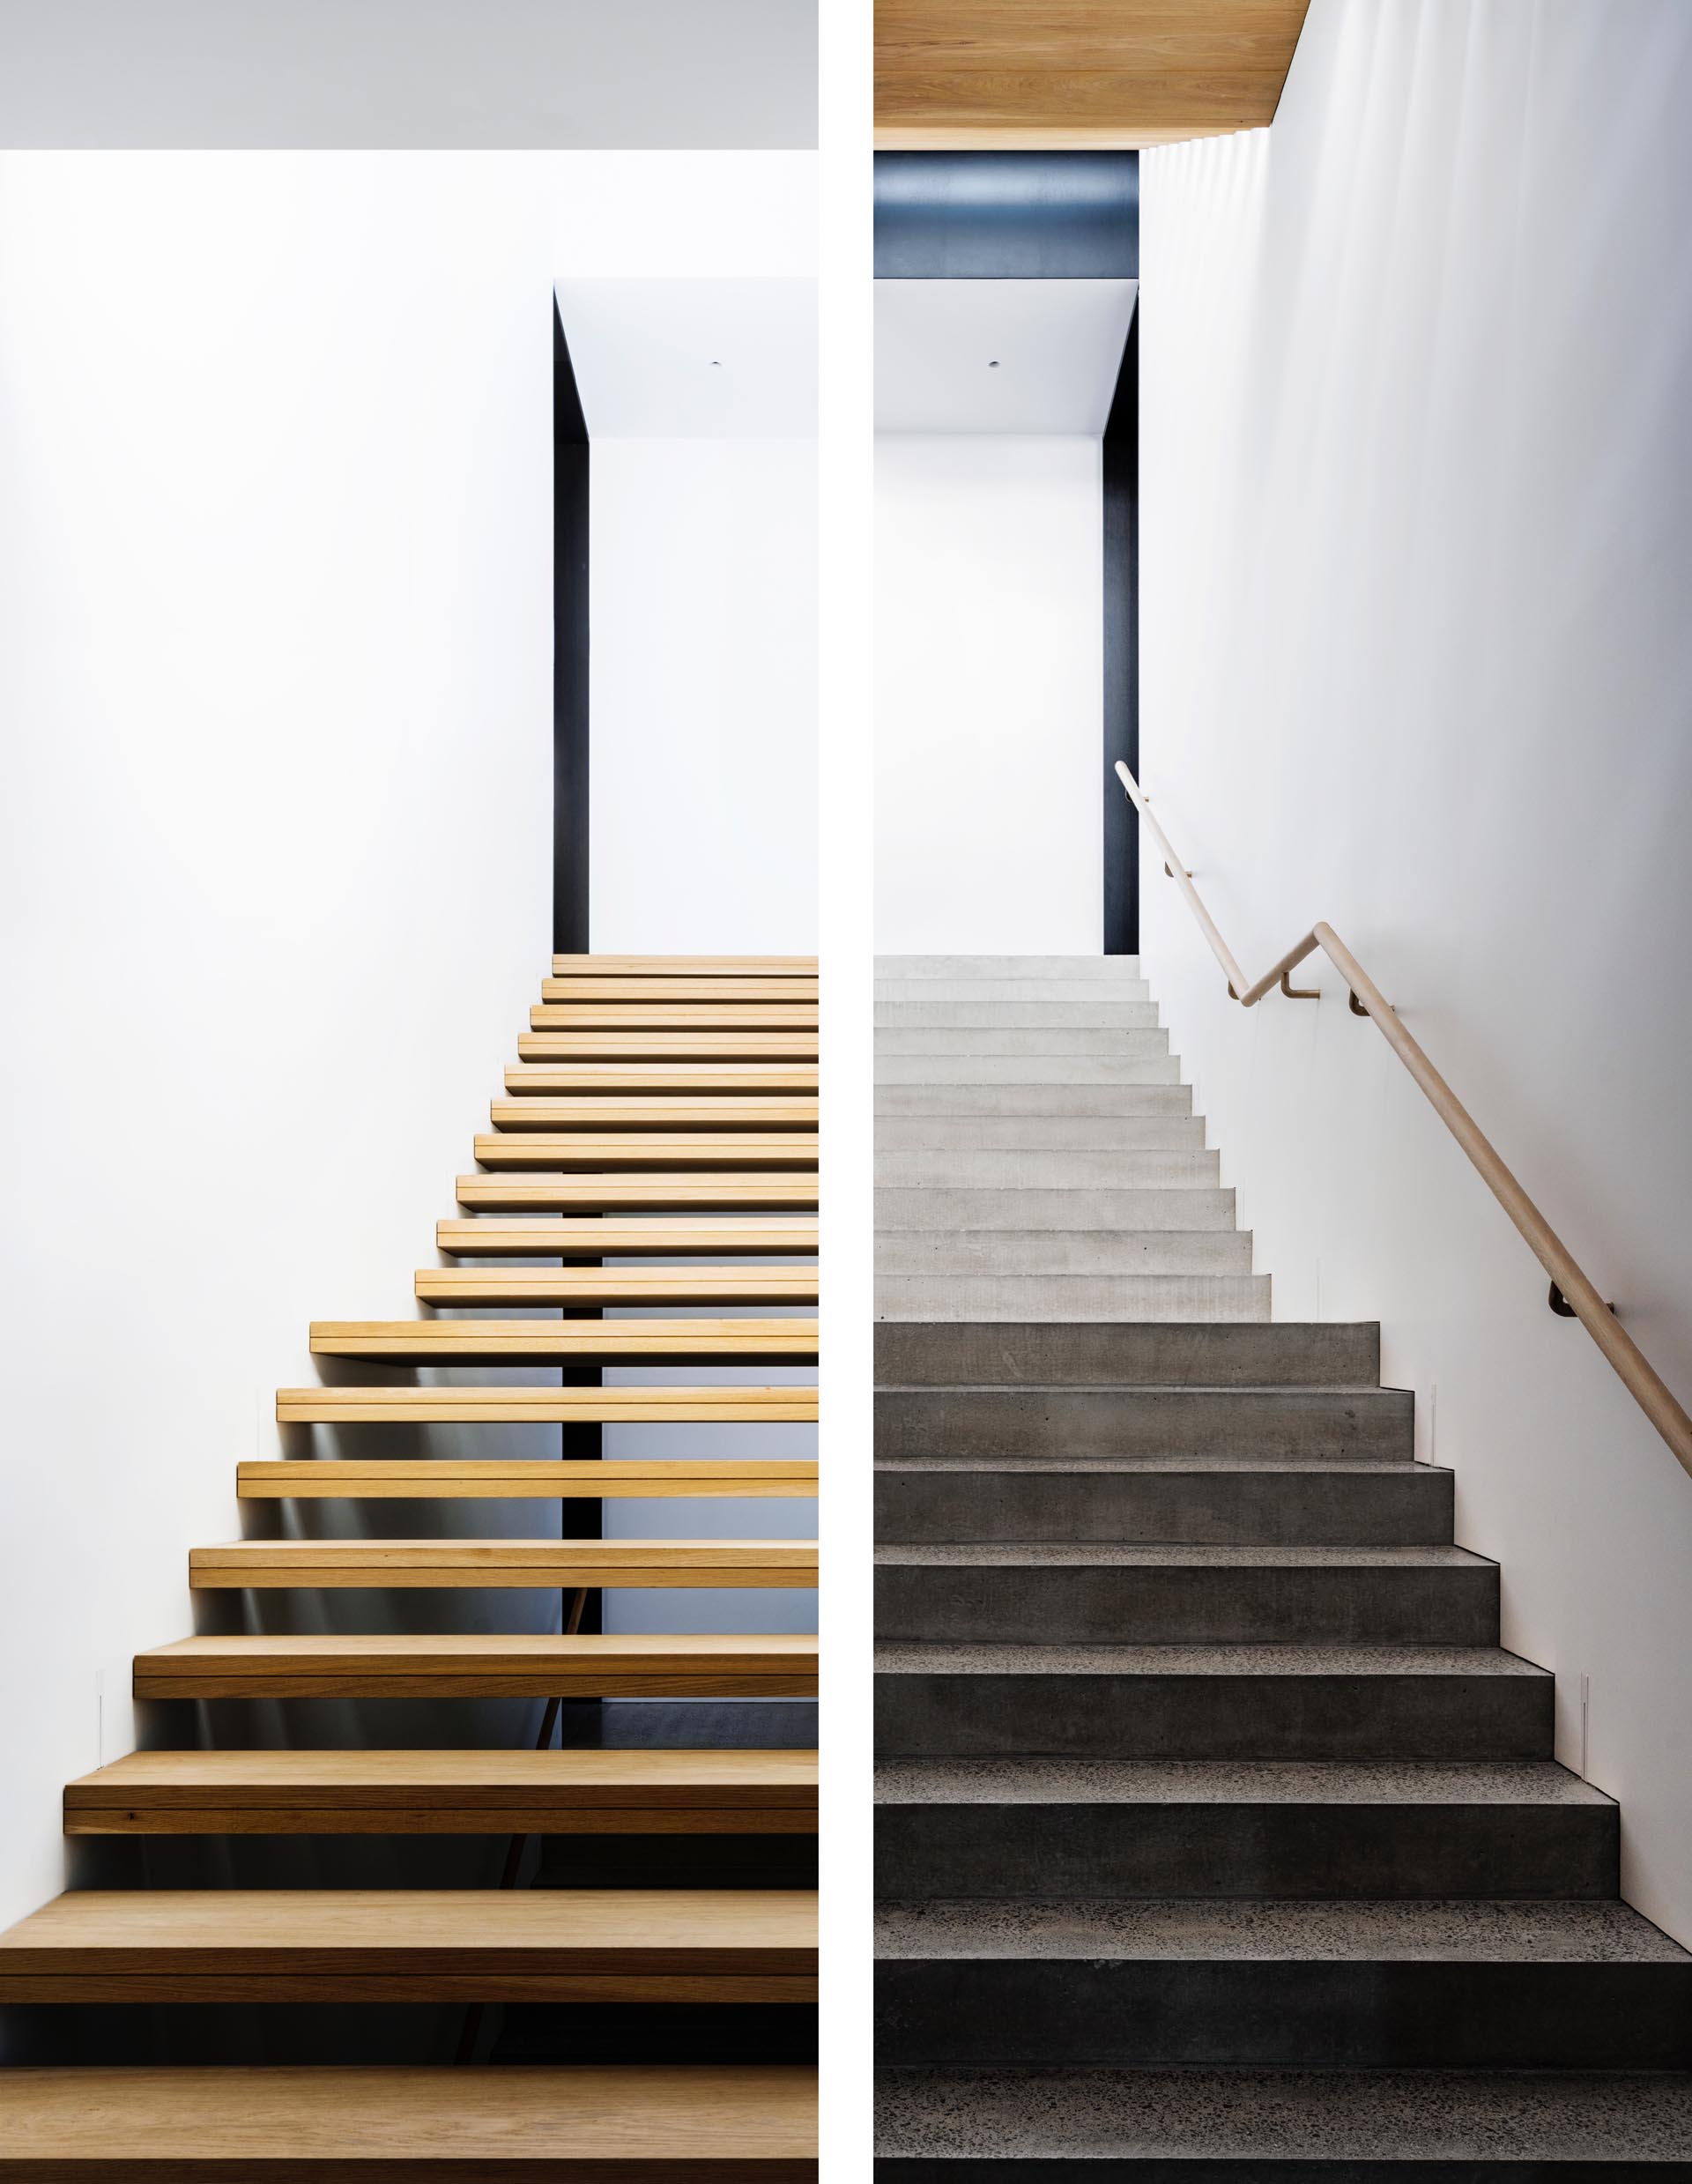 Два разных стиля лестниц: деревянная и бетонная.